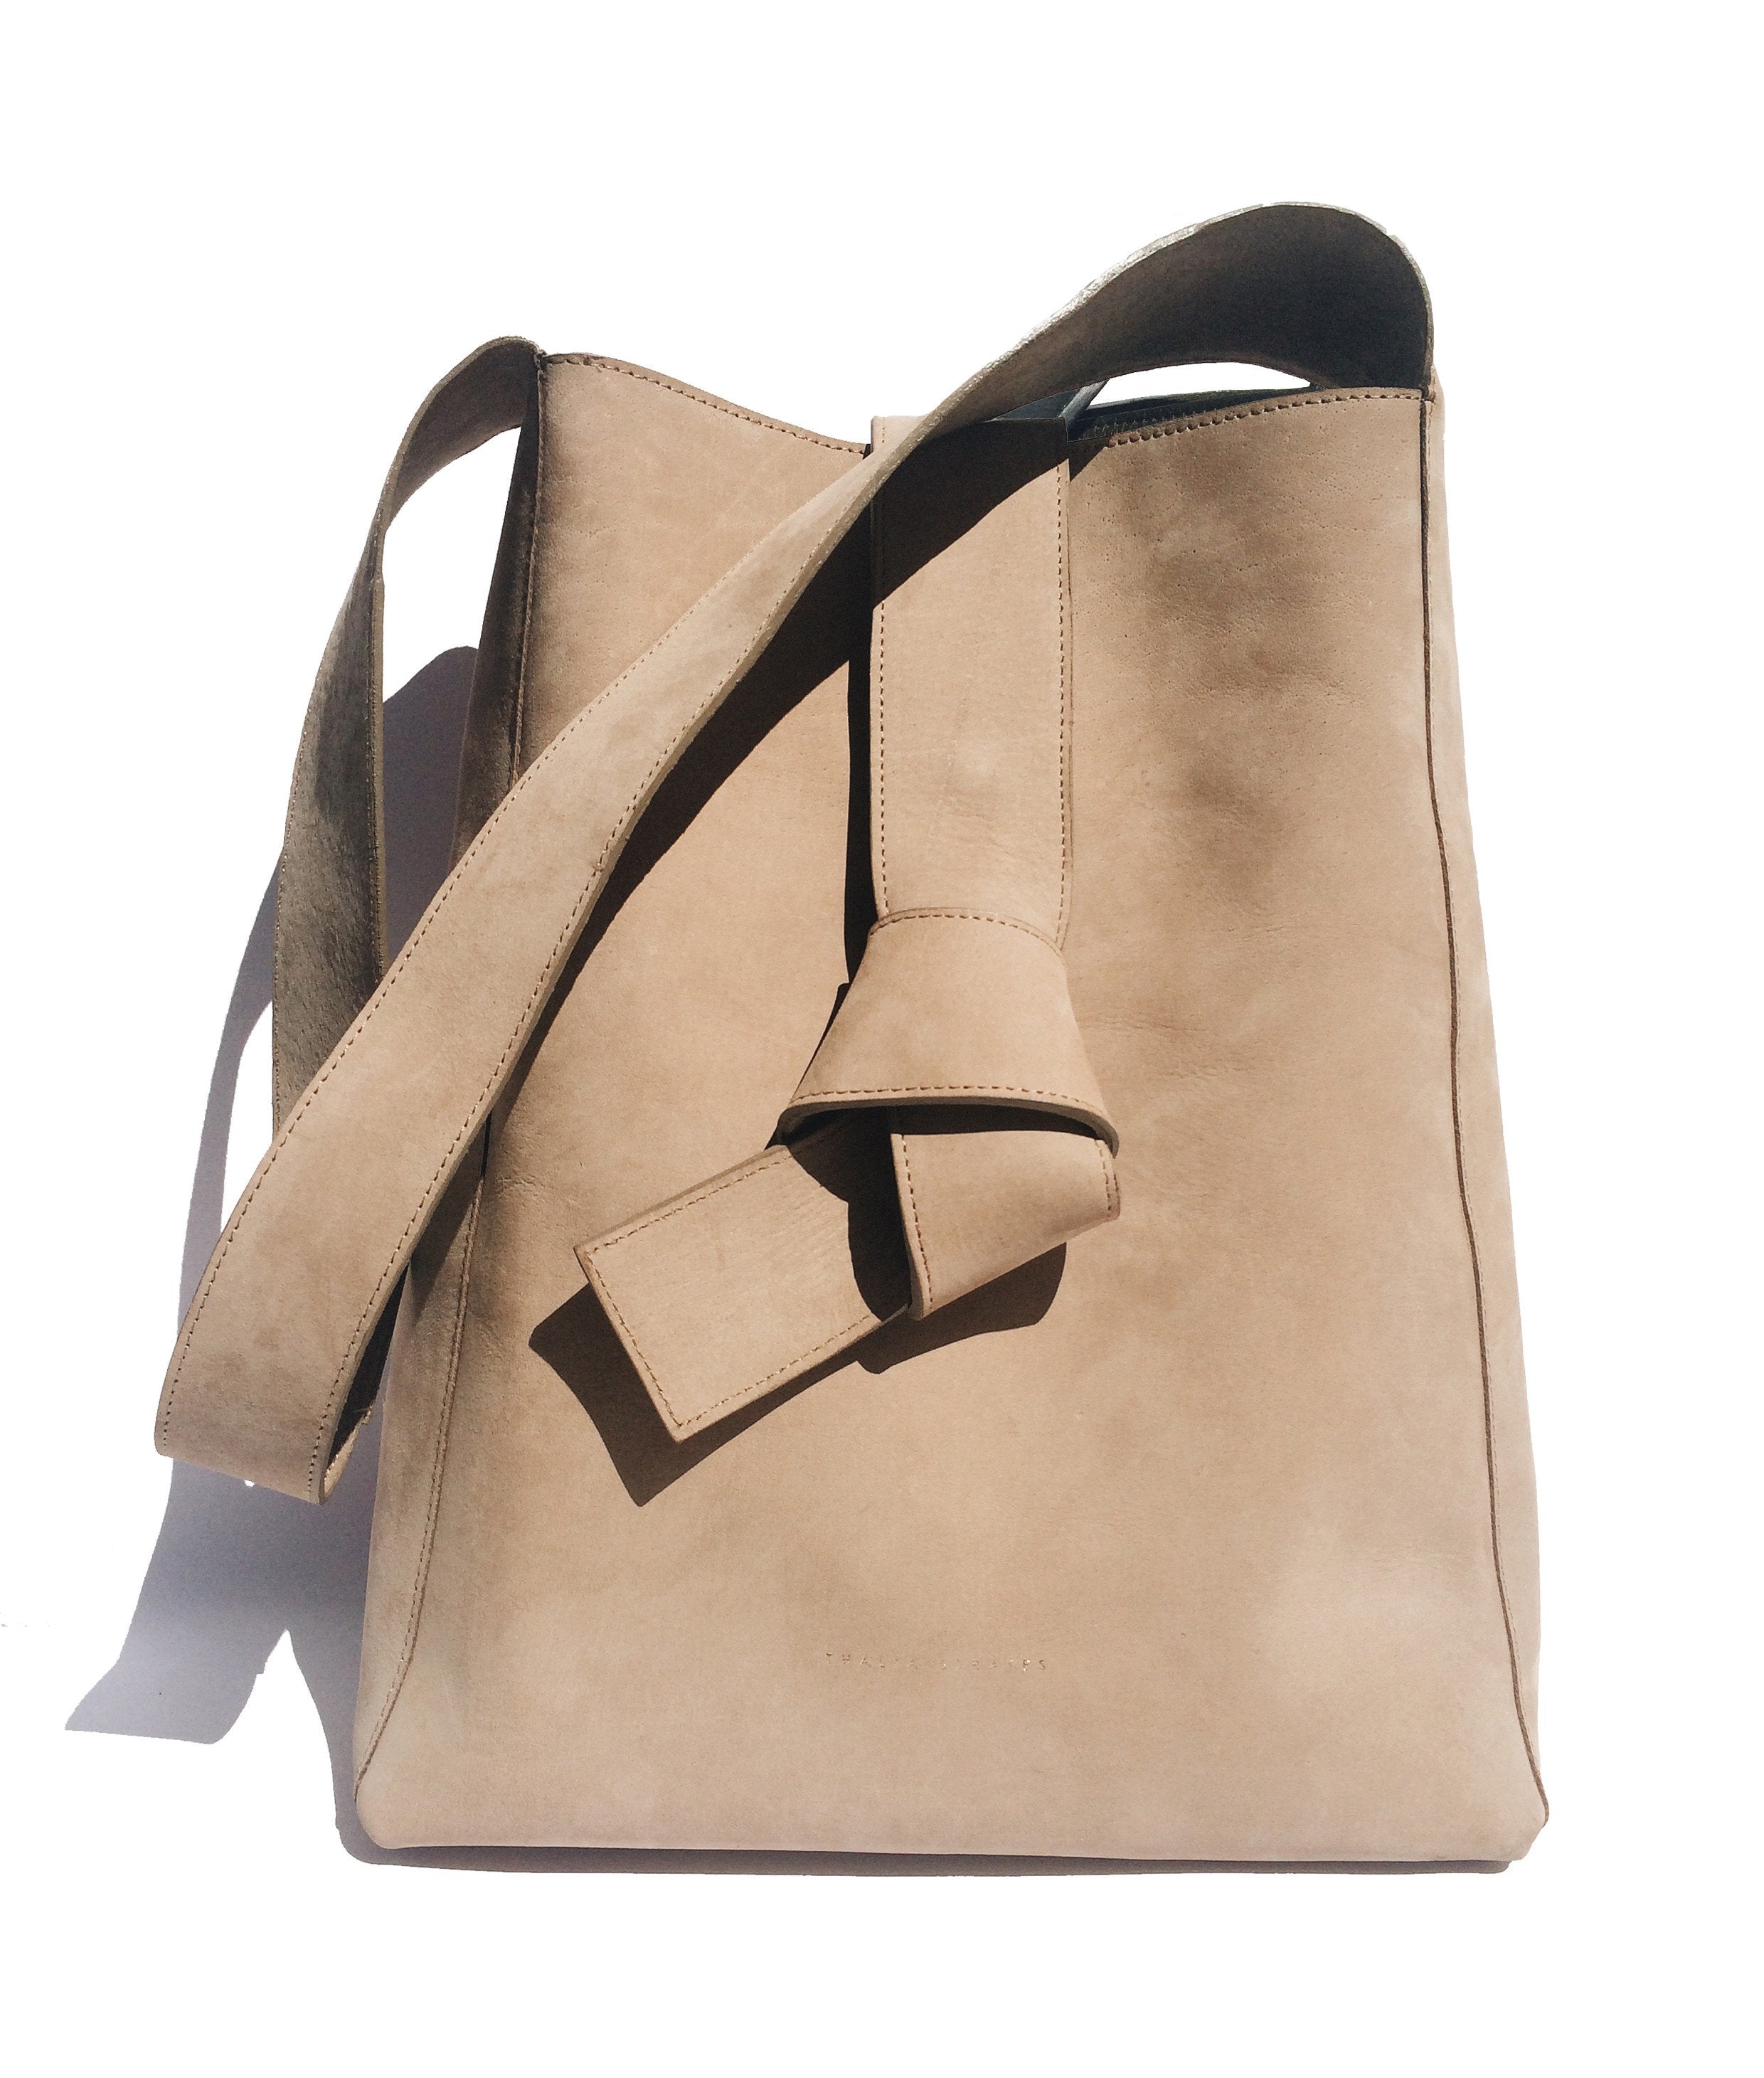 Geneva Shoulder Leather Bag - sand Nubuck